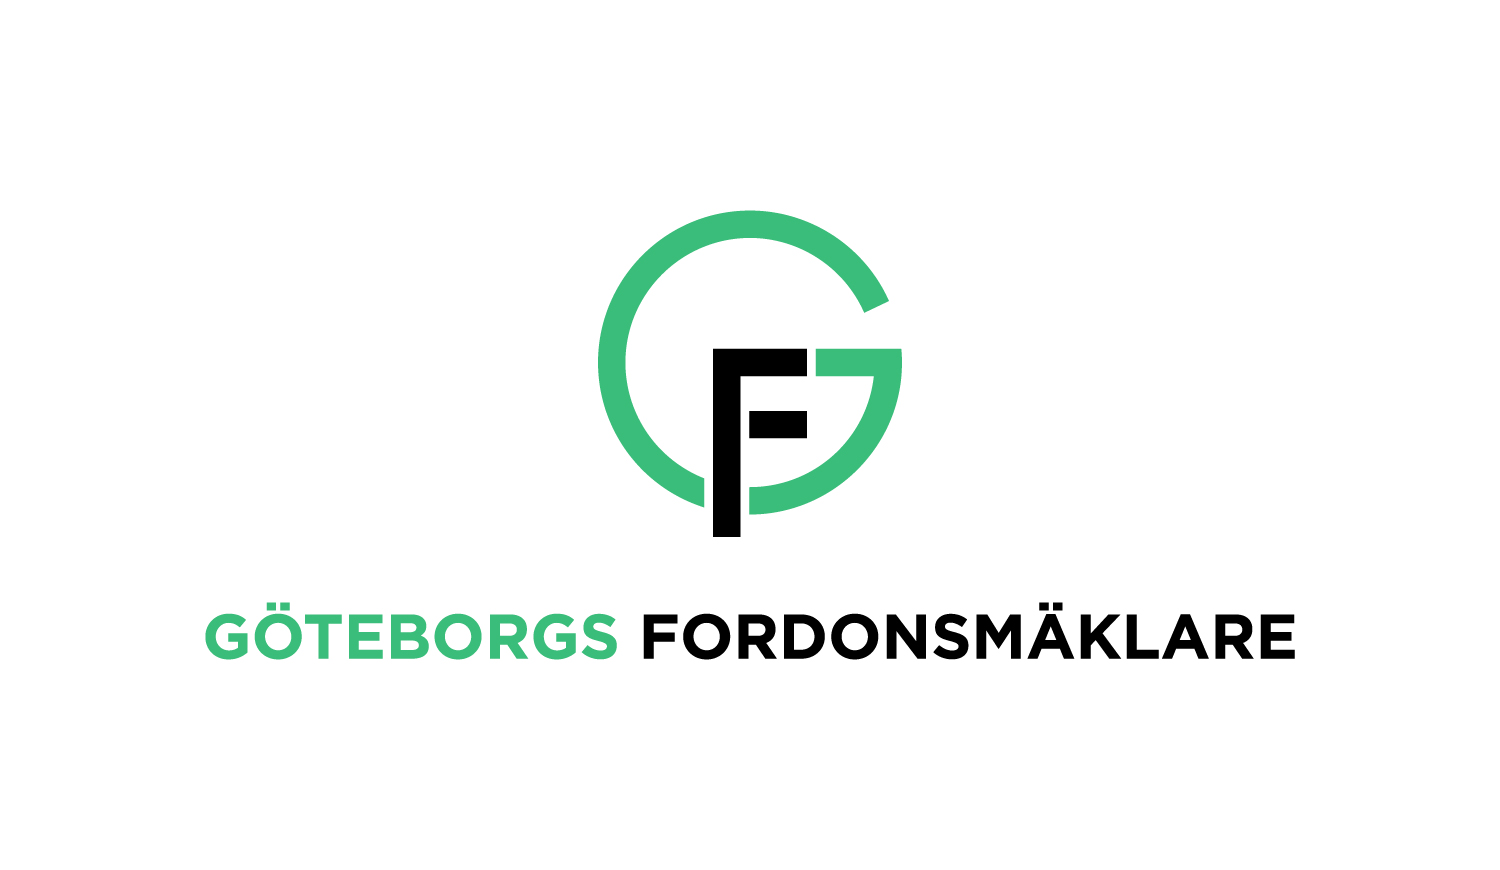 GF GÖTEBORGS FORDONSMÄKLARE